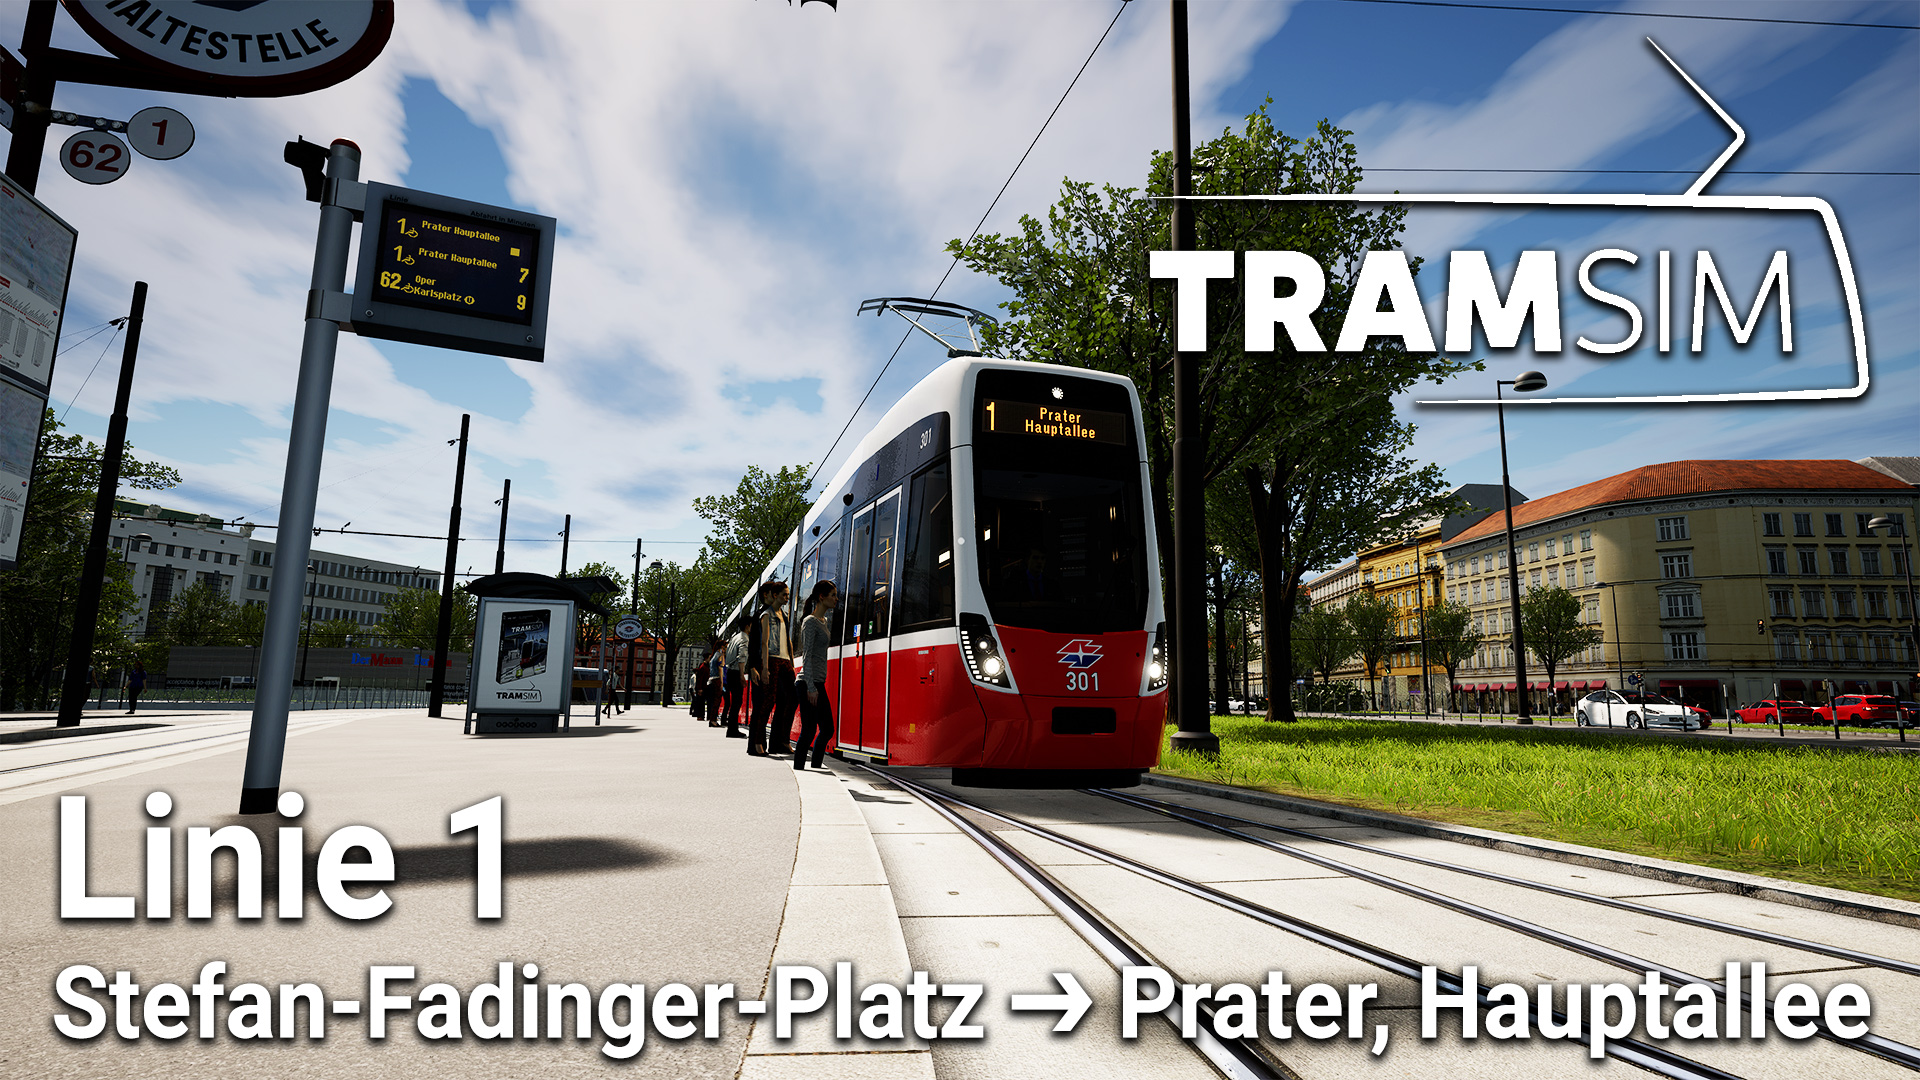 TramSim – Mit der Flexity auf der Linie 1 durch Wien